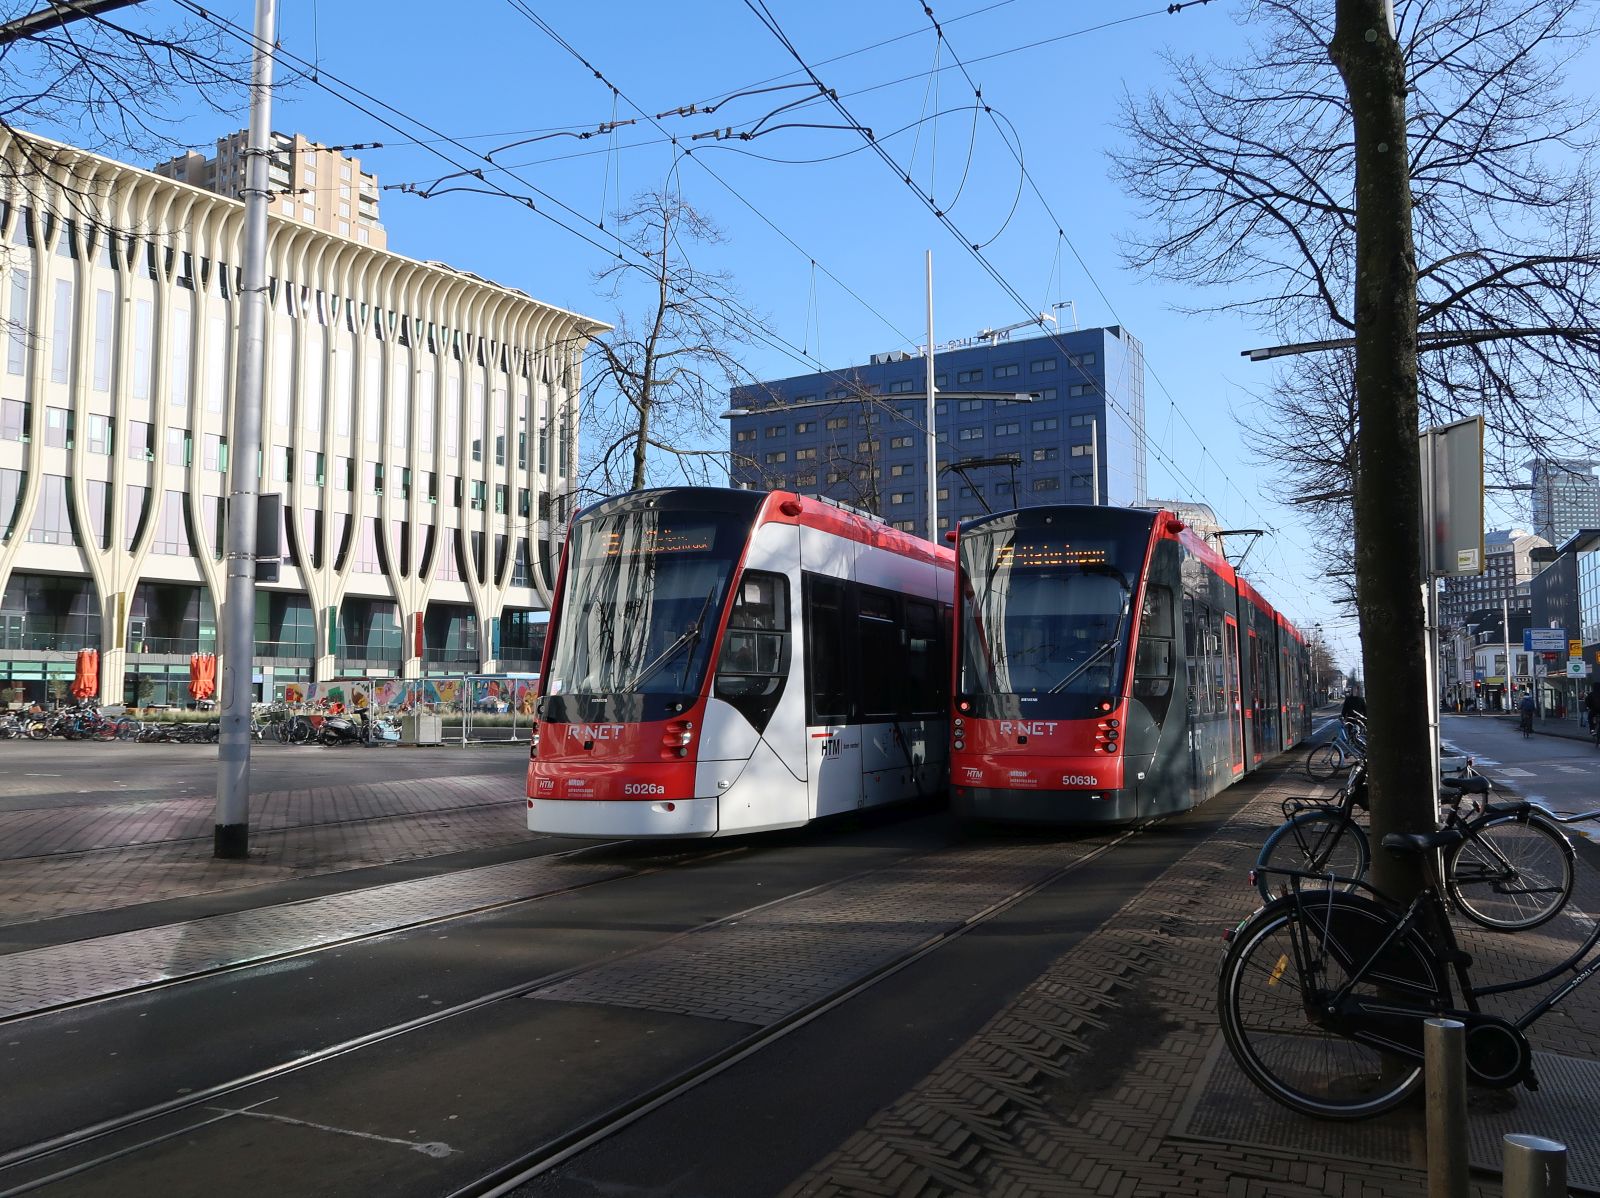 HTM Strassenbahn 5026 und 5063 Spui, Den Haag 22-01-2024.

HTM tram 5026 en 5063 Spui, Den Haag 22-01-2024.